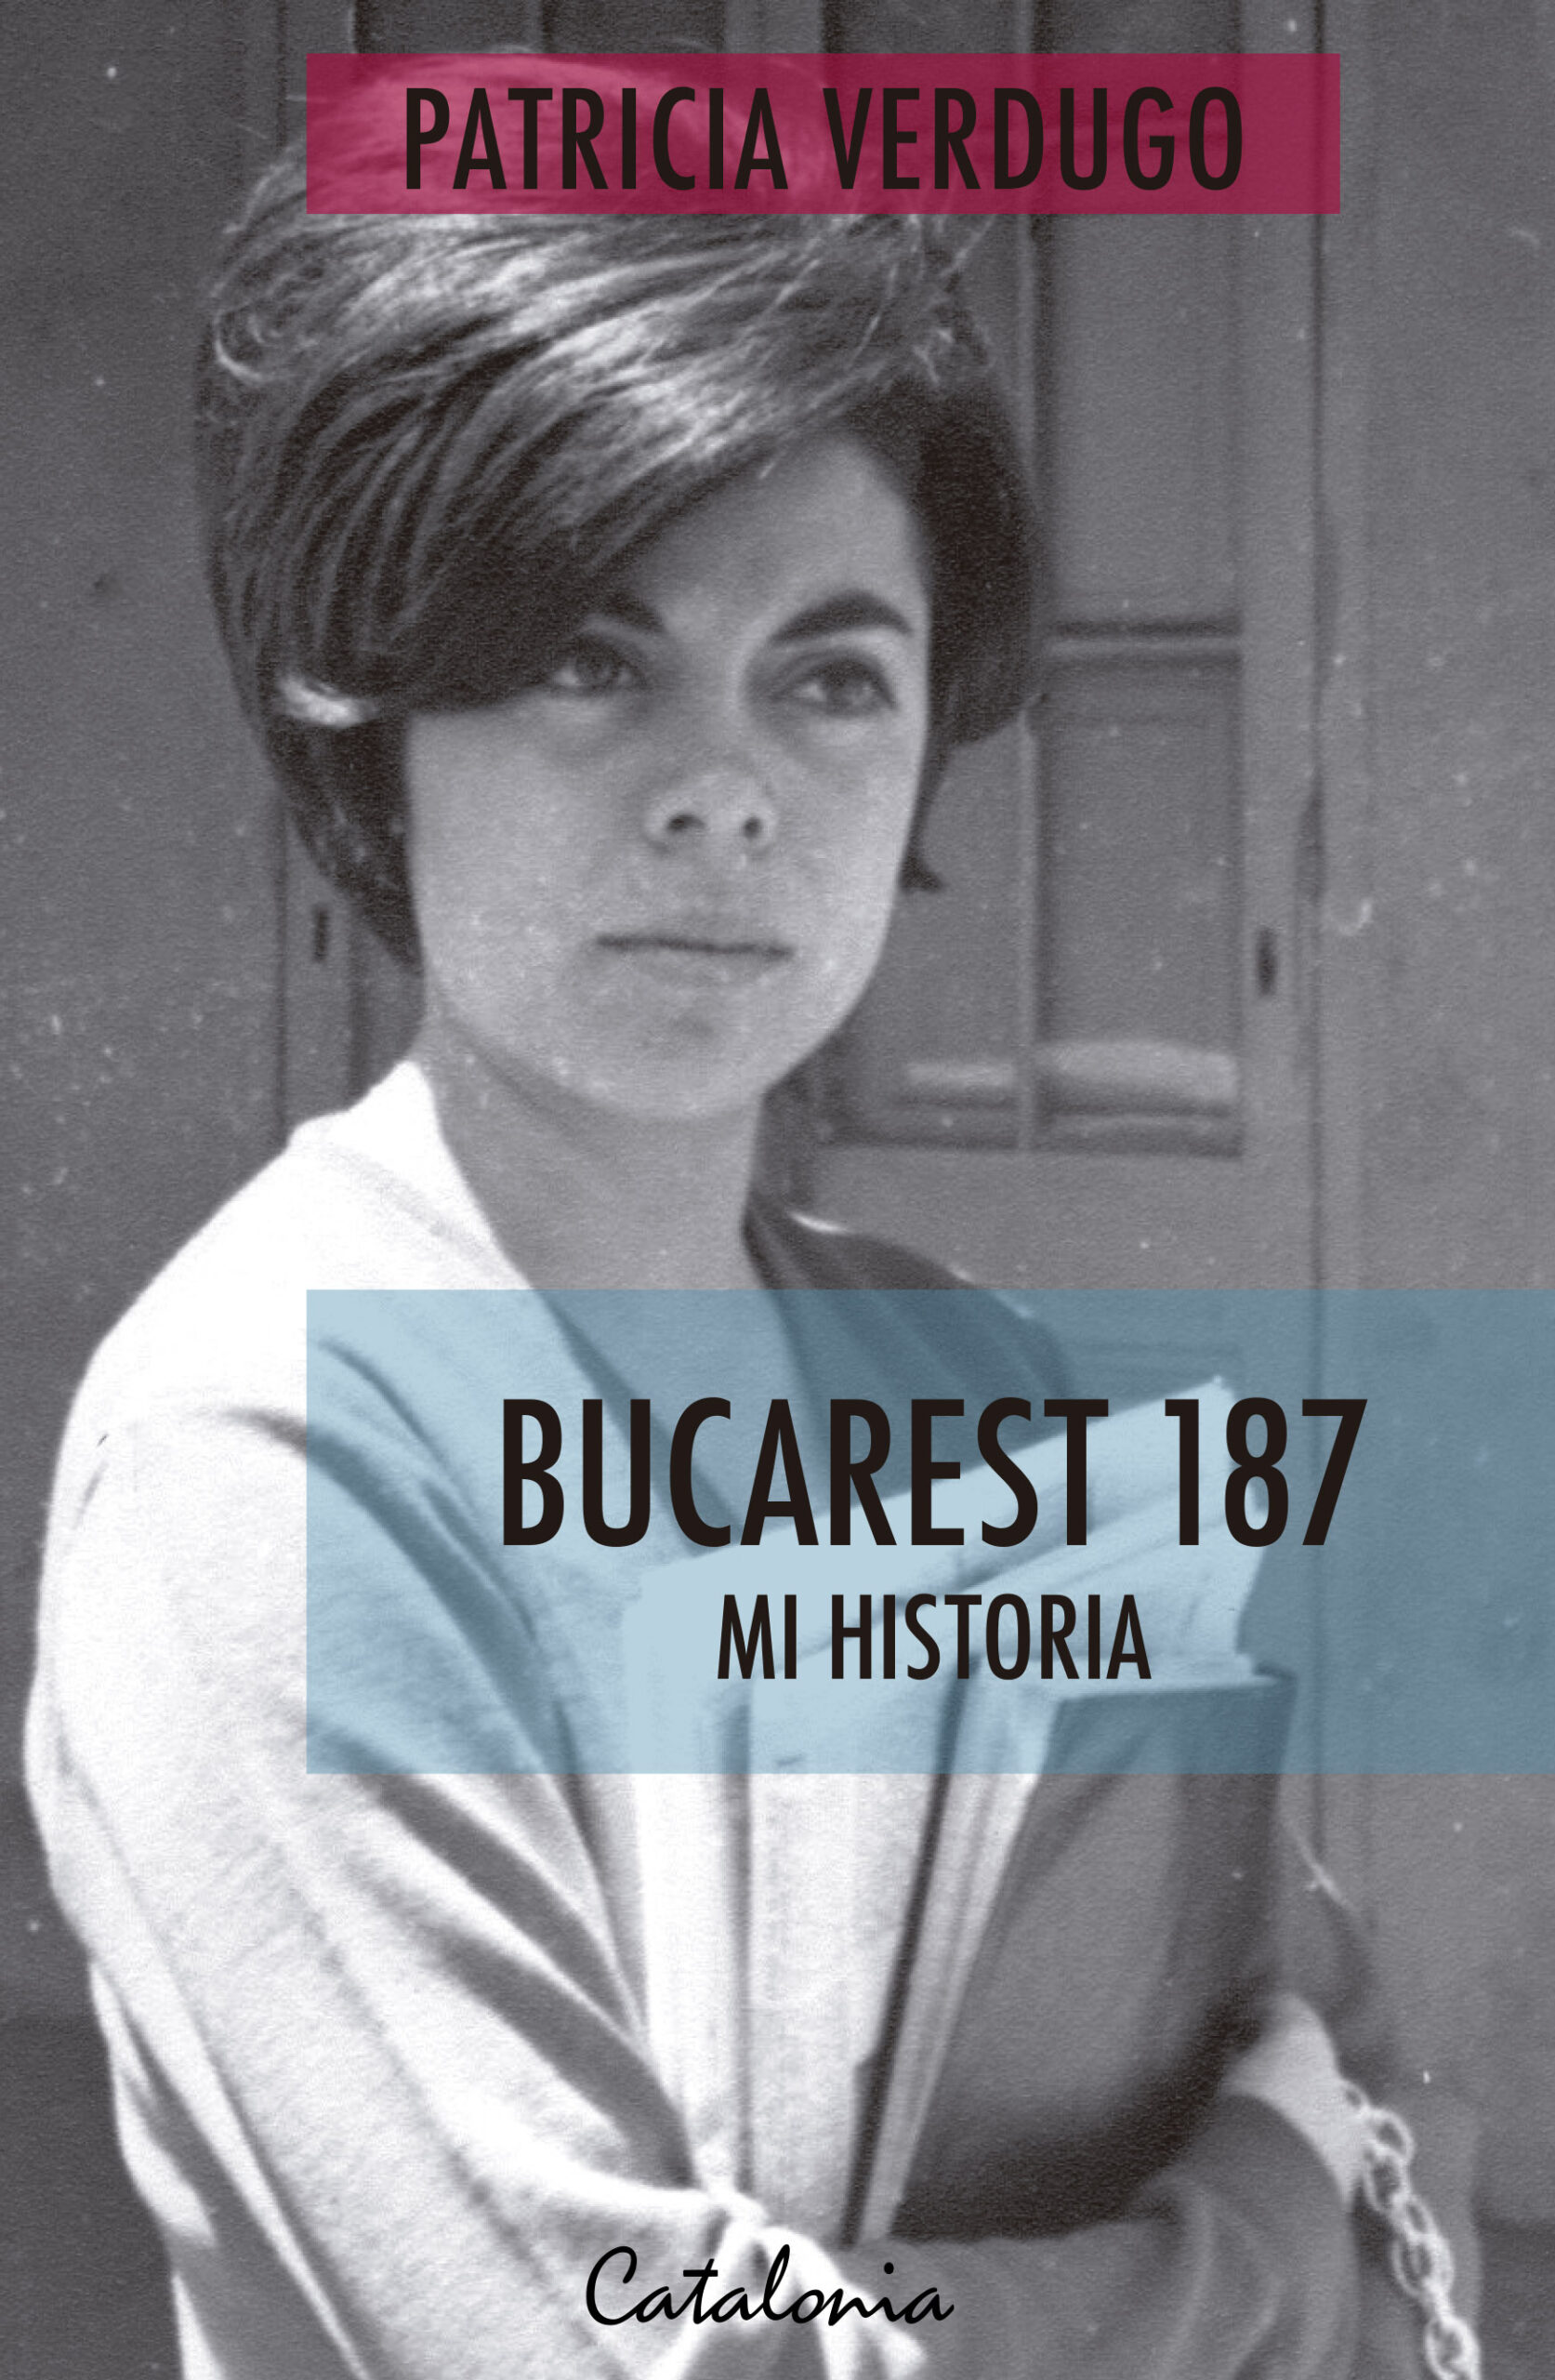 BUCAREST 187 – Catalonia